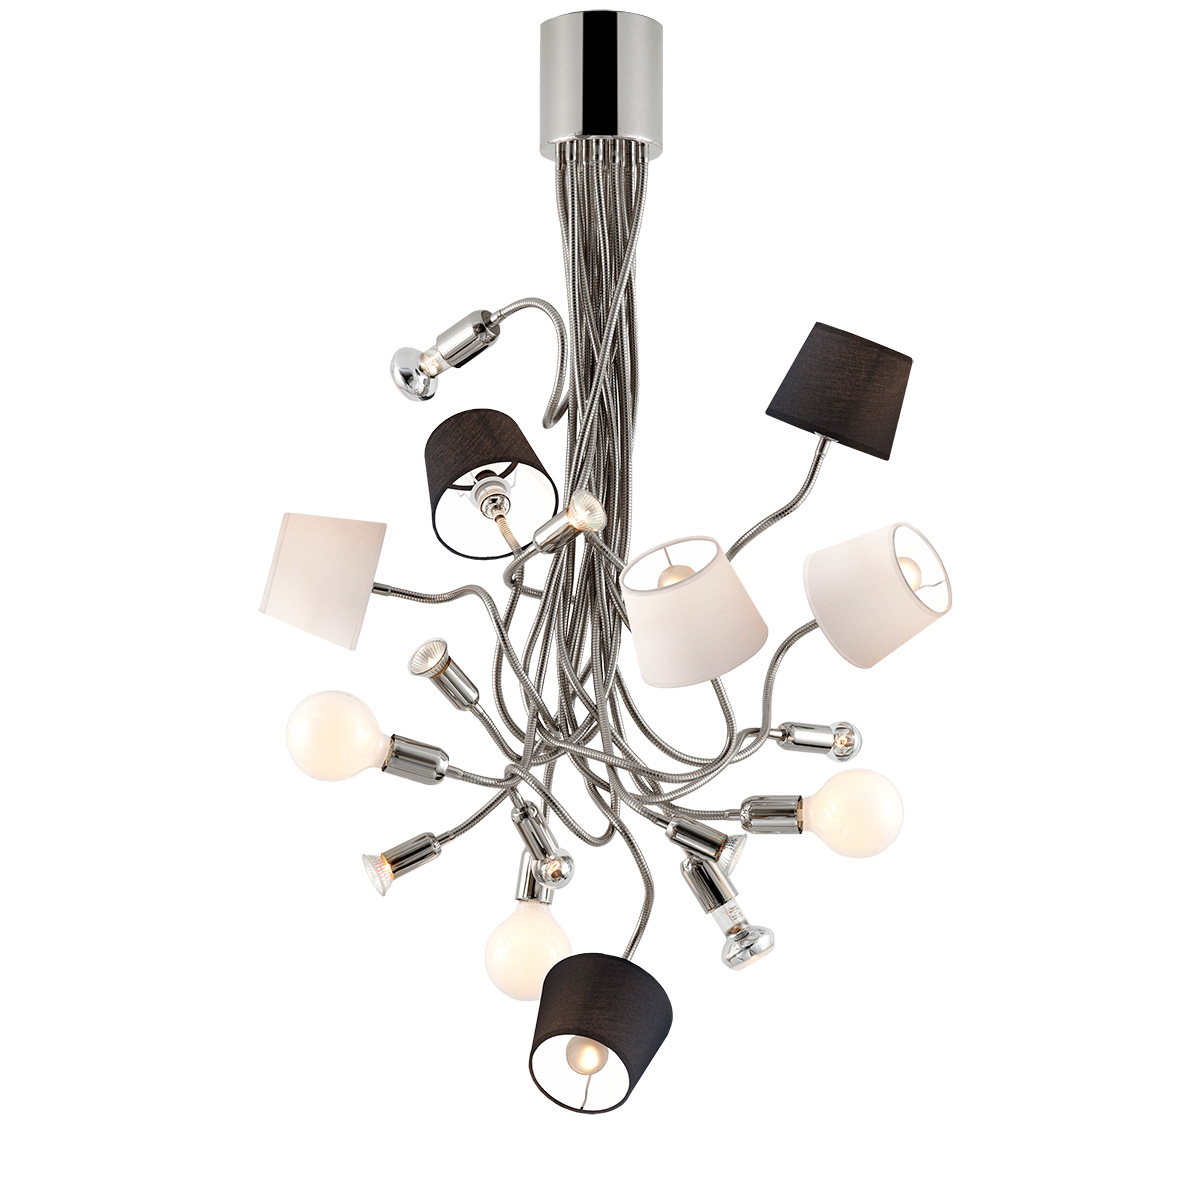 Μοντέρνο 17φωτο φωτιστικό με καπέλα FLEX modern 17-bulb chandelier with shades